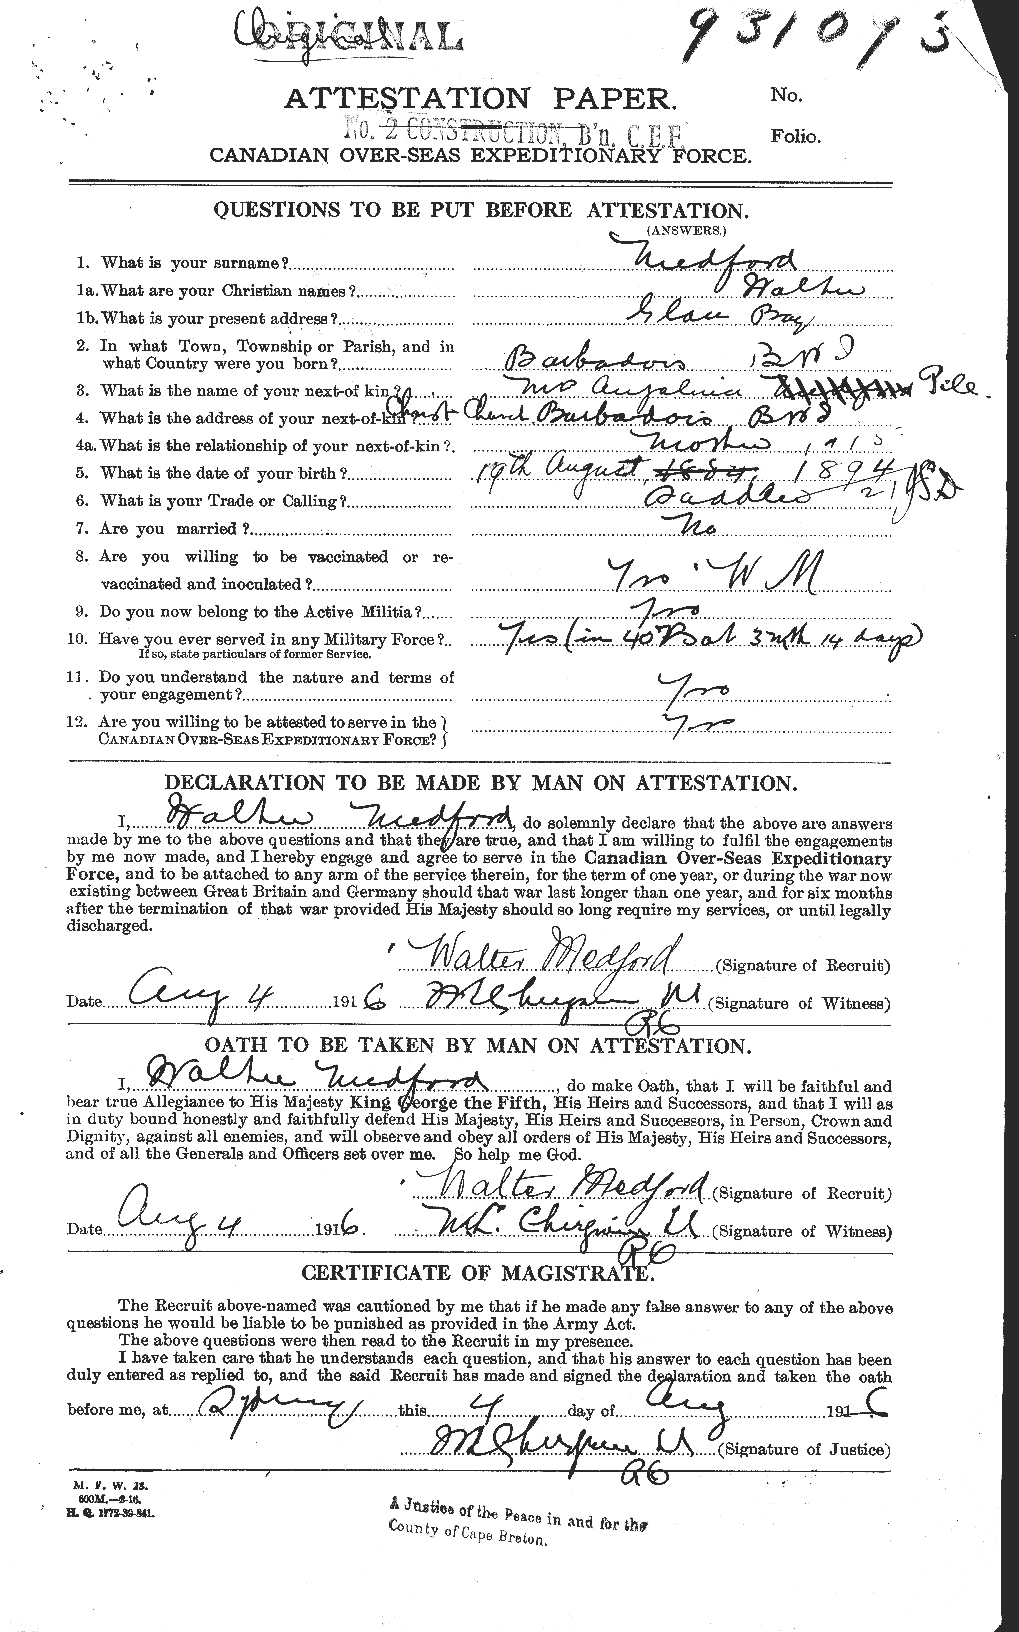 Dossiers du Personnel de la Première Guerre mondiale - CEC 489812a